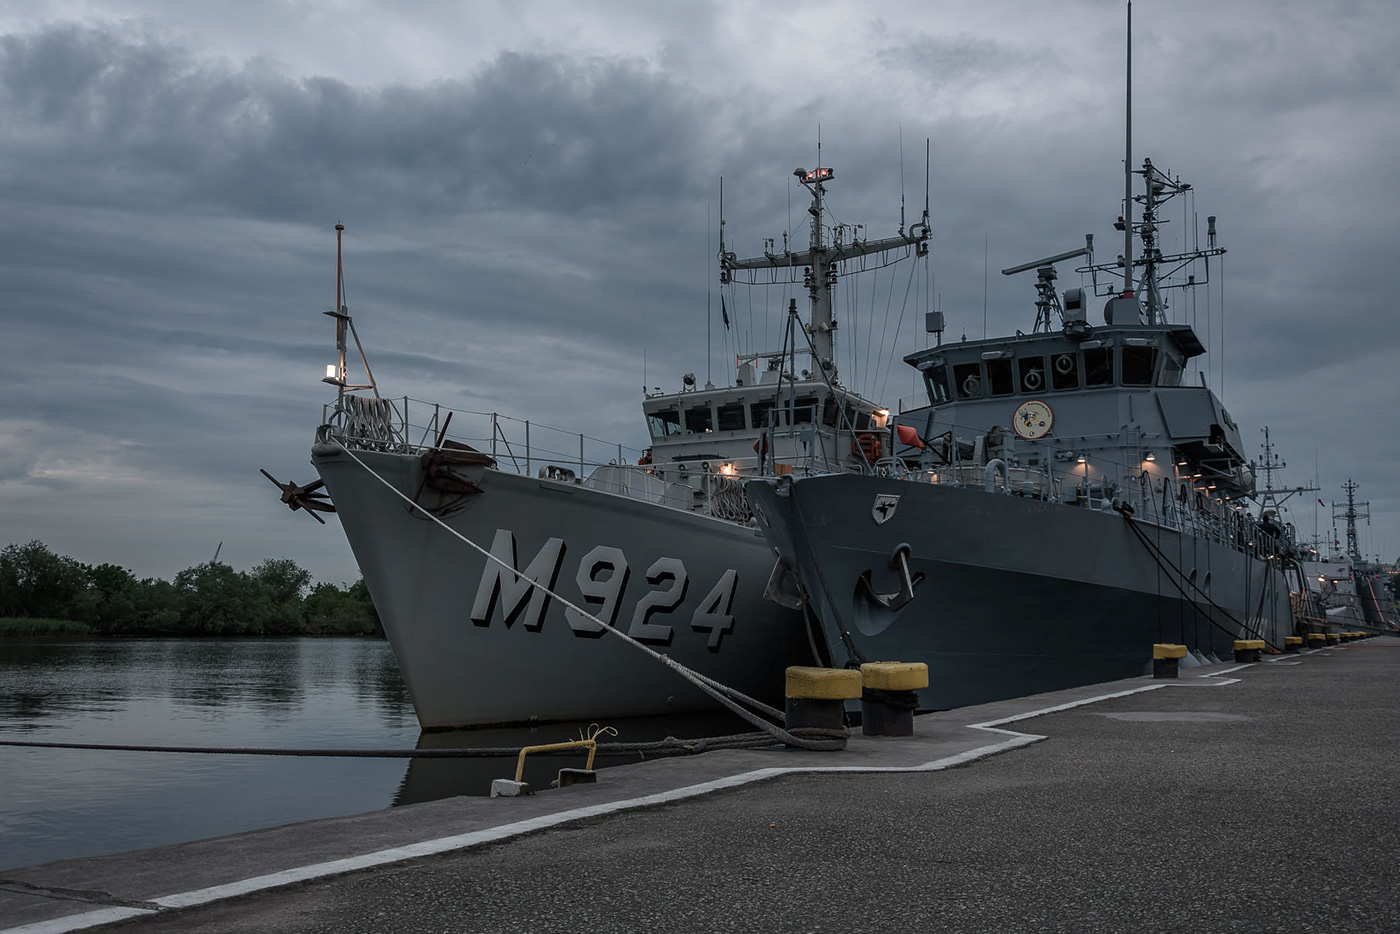 warships ships NATO Military port river MORNING morning light odra Szczecin